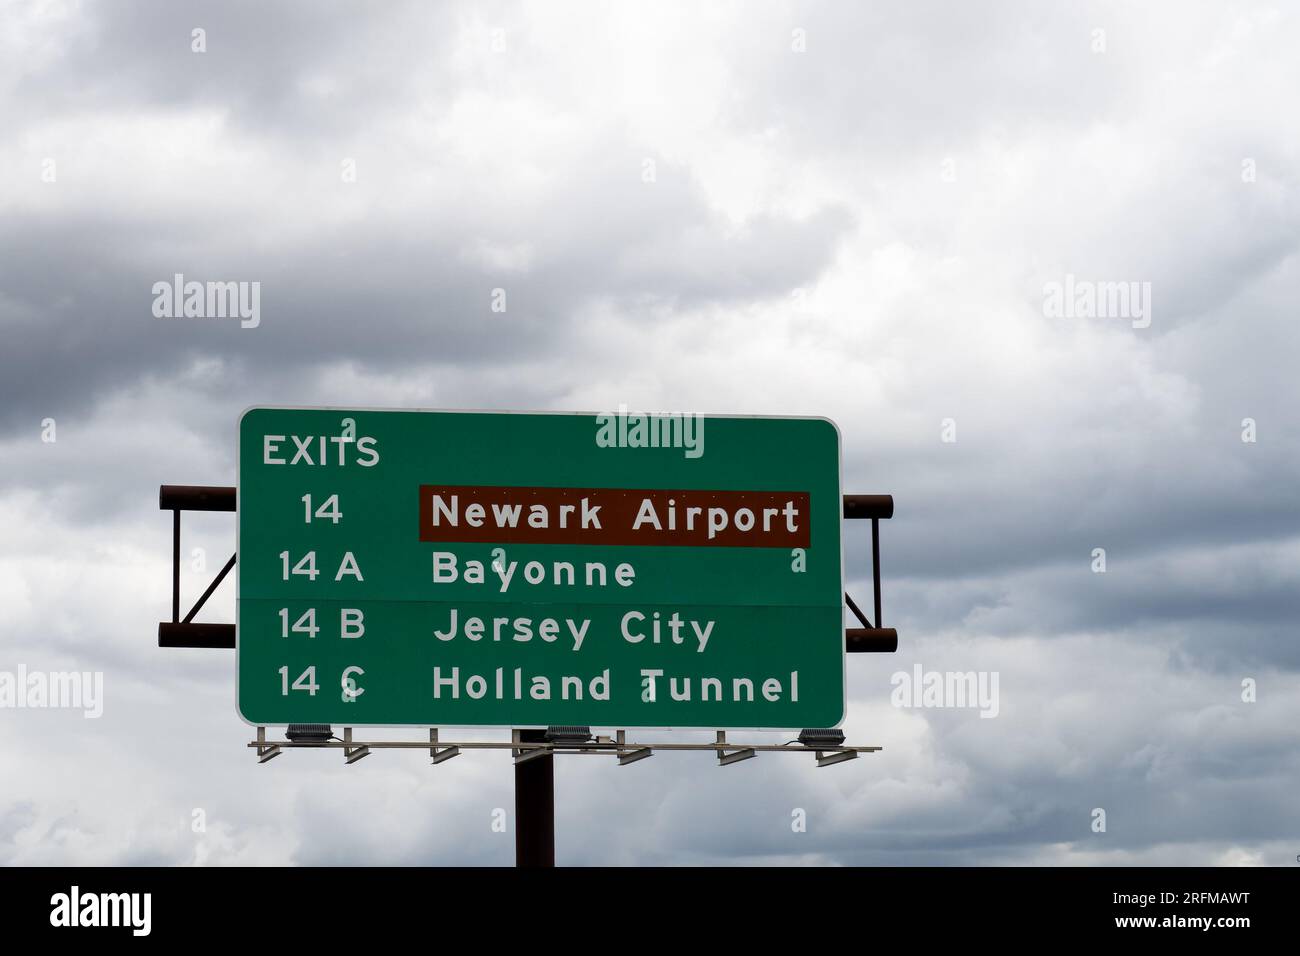 Prenez la sortie 14 sur la New Jersey Turnpike I95 pour l'aéroport de Newark et 14a Bayonne, 14B Jersey City et 14C Holland tunnel Banque D'Images